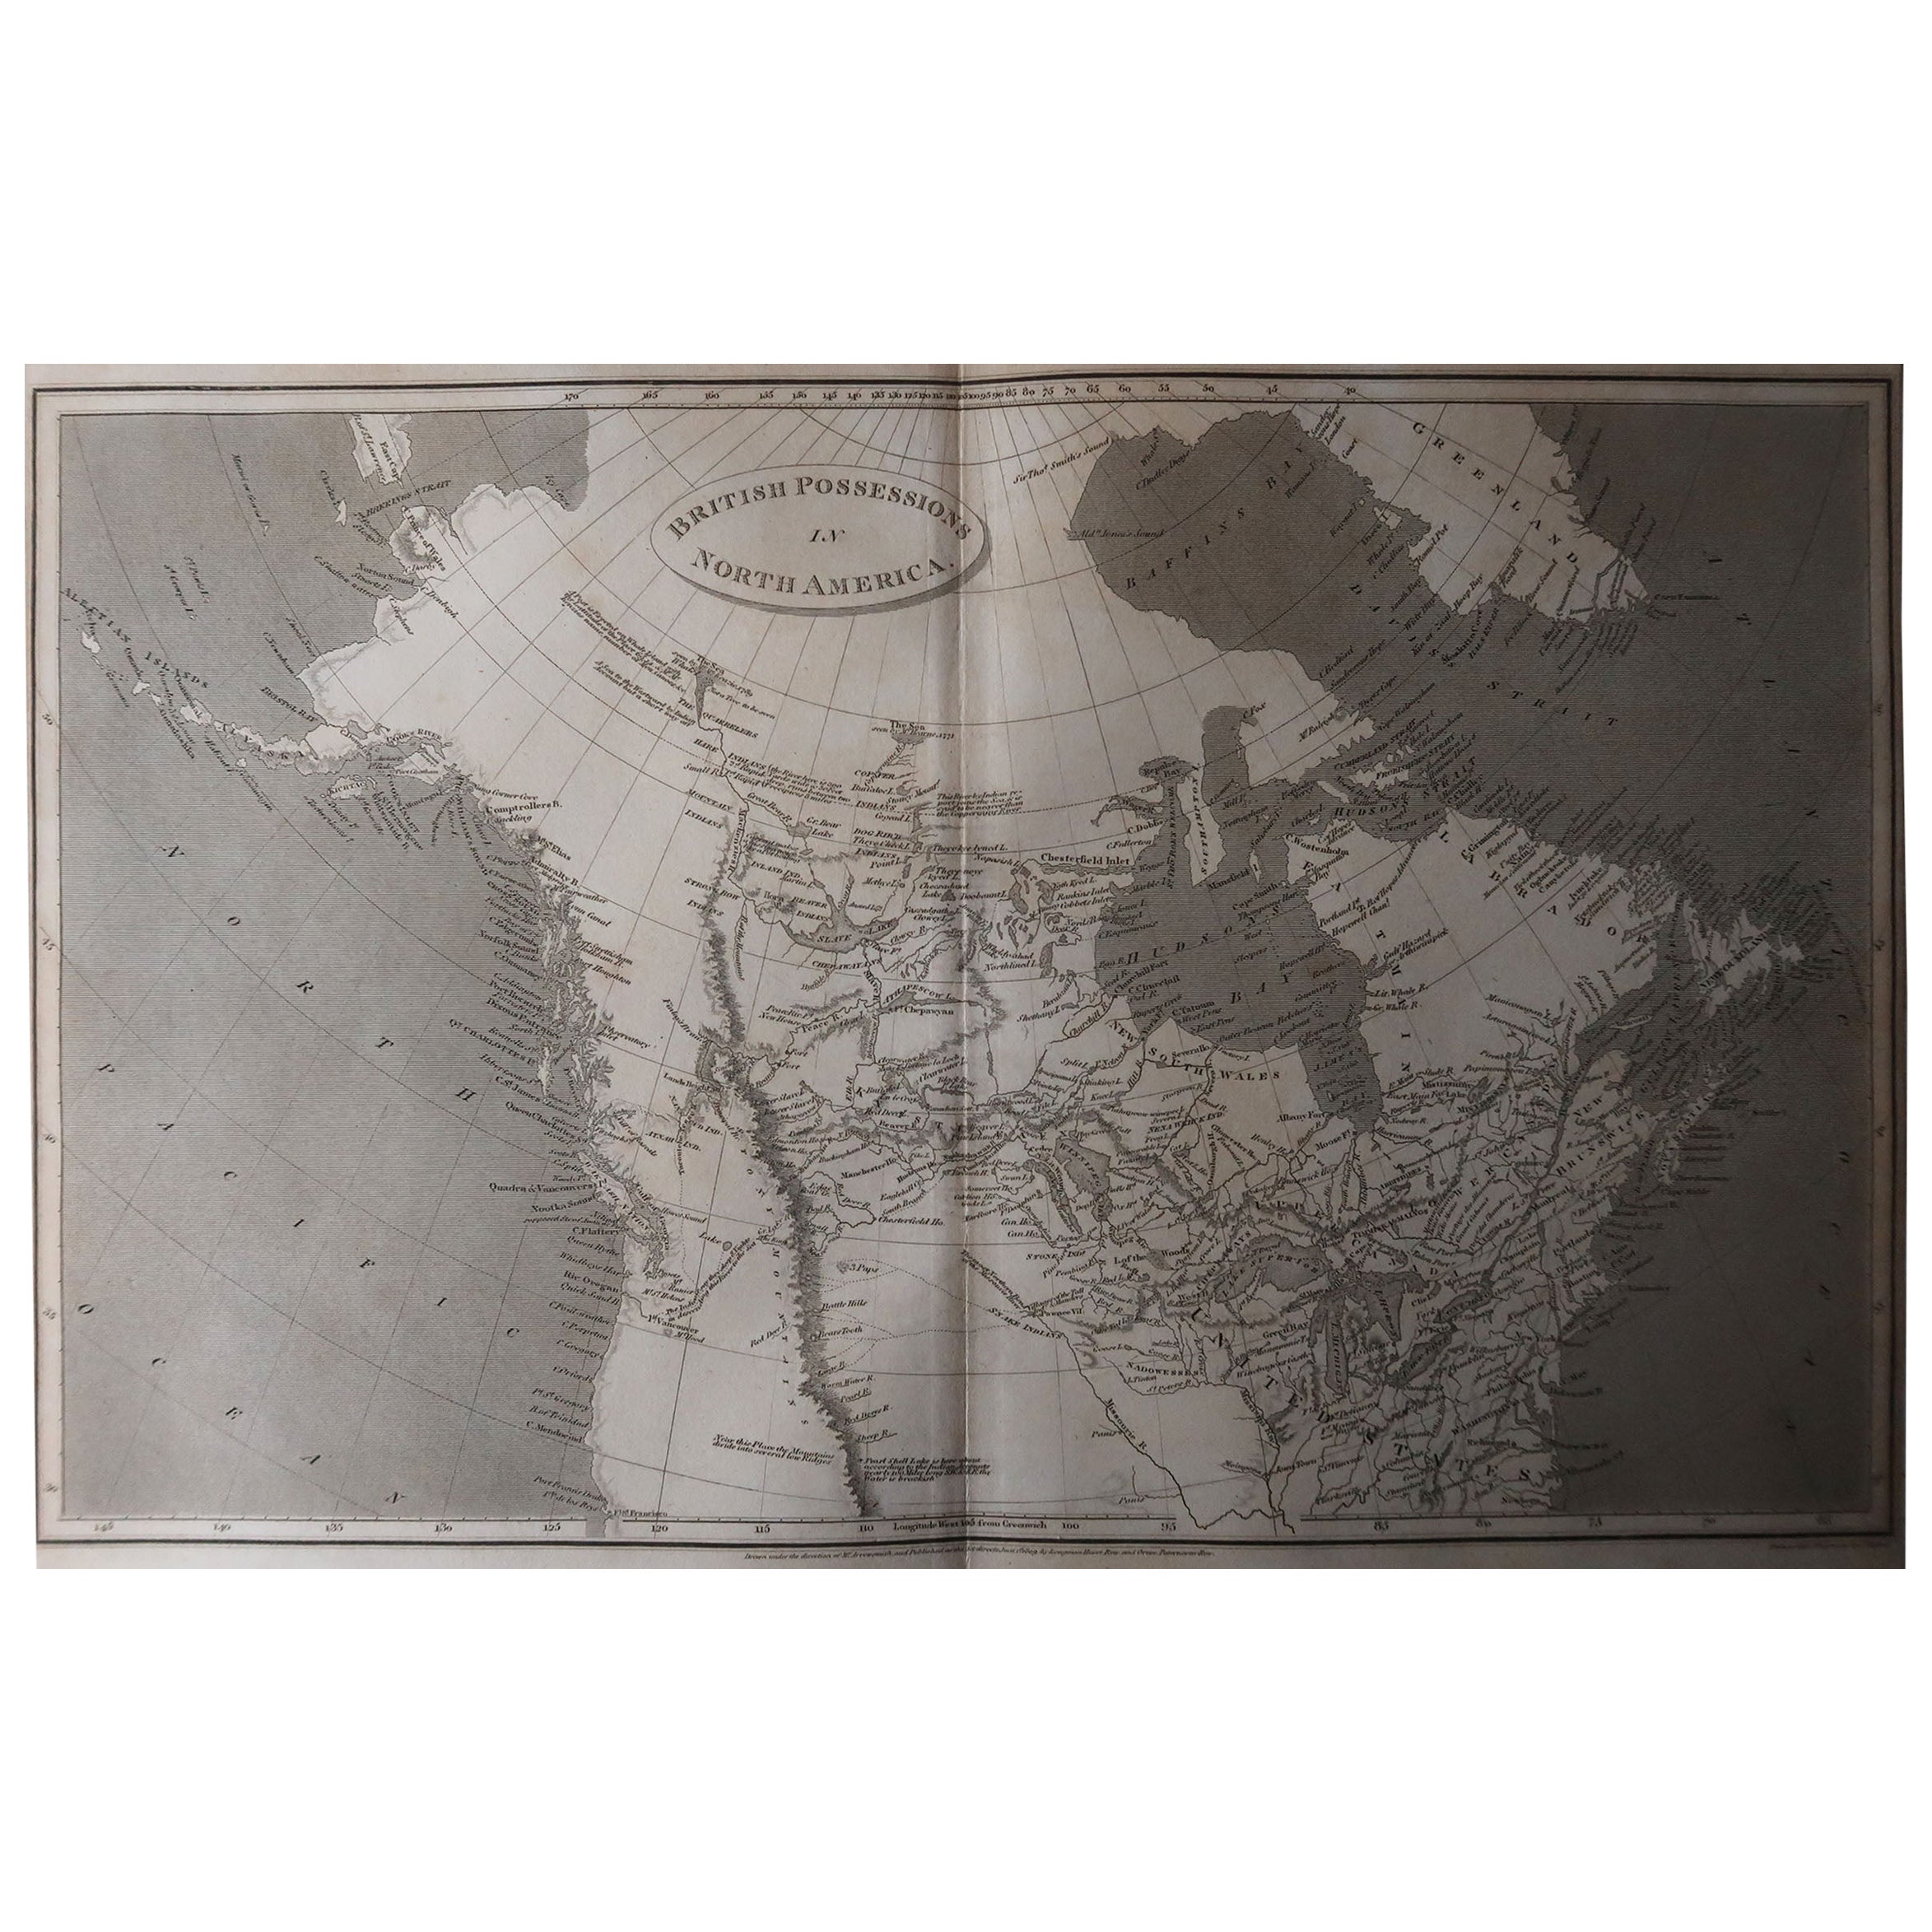 Superbe carte du Canada.

Dessiné sous la direction d'Arrowsmith.

Gravure sur cuivre.

Publié par Longman, Hurst, Rees, Orme et Brown, 1820

Non encadré.